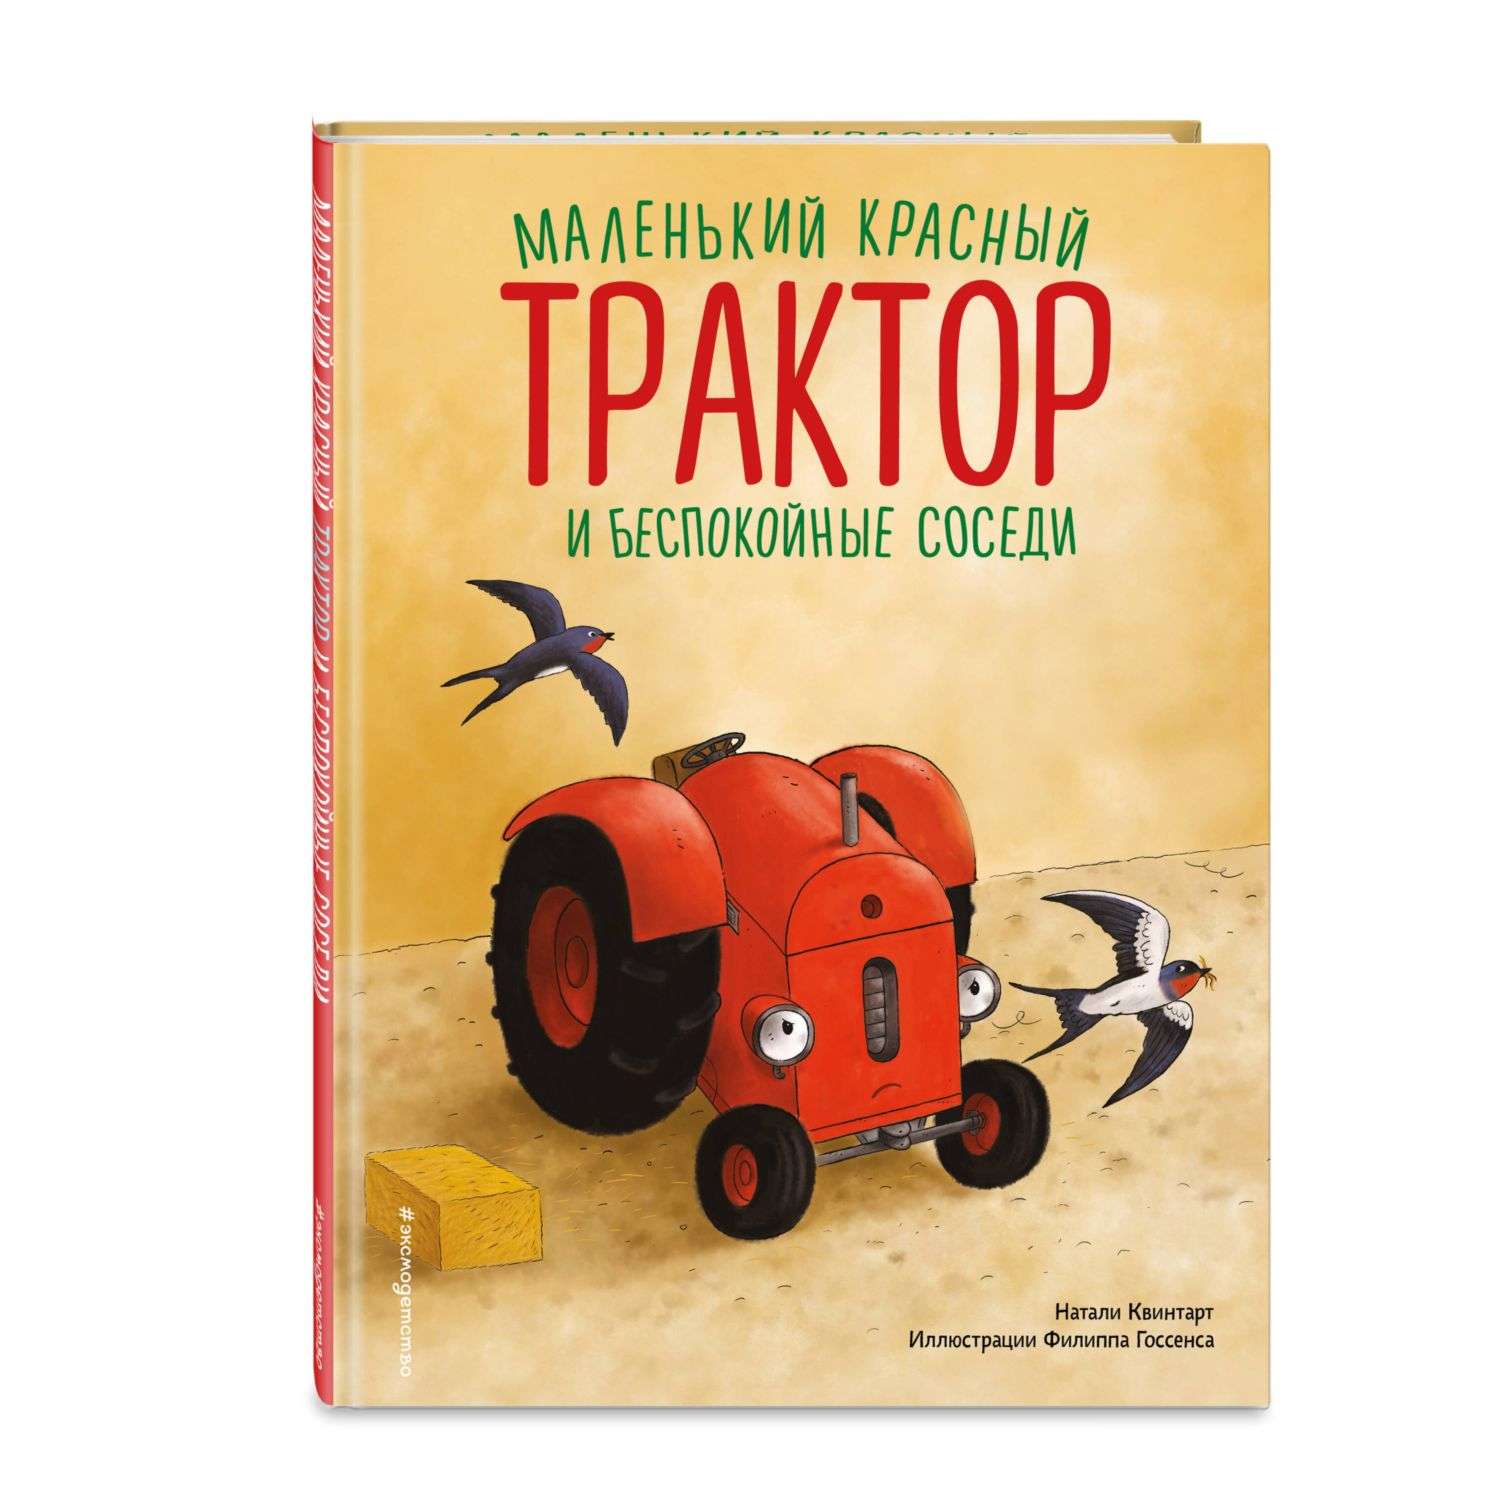 Книга Маленький красный Трактор и беспокойные соседи иллюстрации Госсенса - фото 1